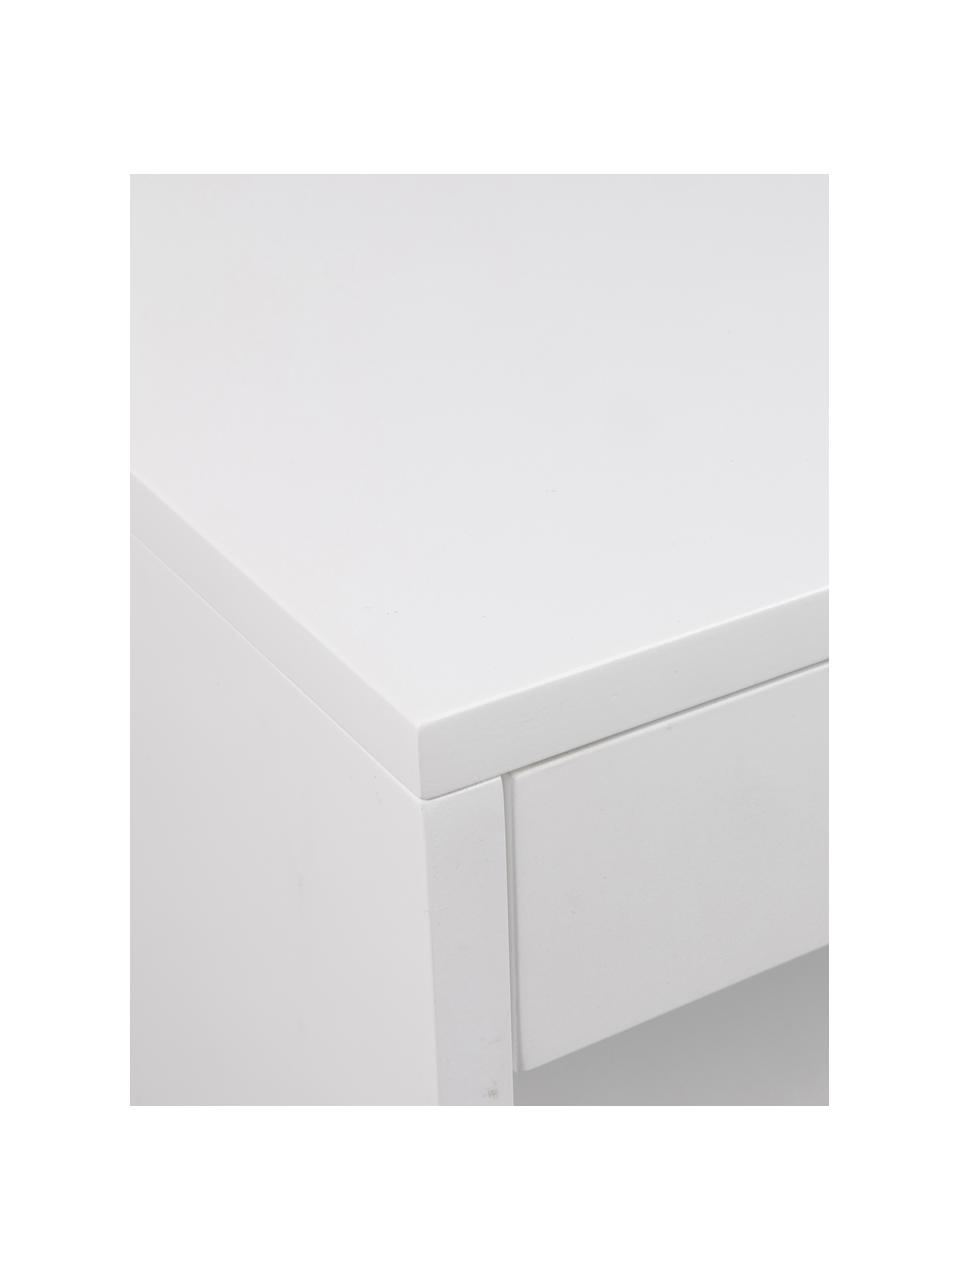 Wand-Nachttisch Cholet mit Schublade, Mitteldichte Holzfaserplatte (MDF), lackiert, Weiß, B 50 x H 24 cm